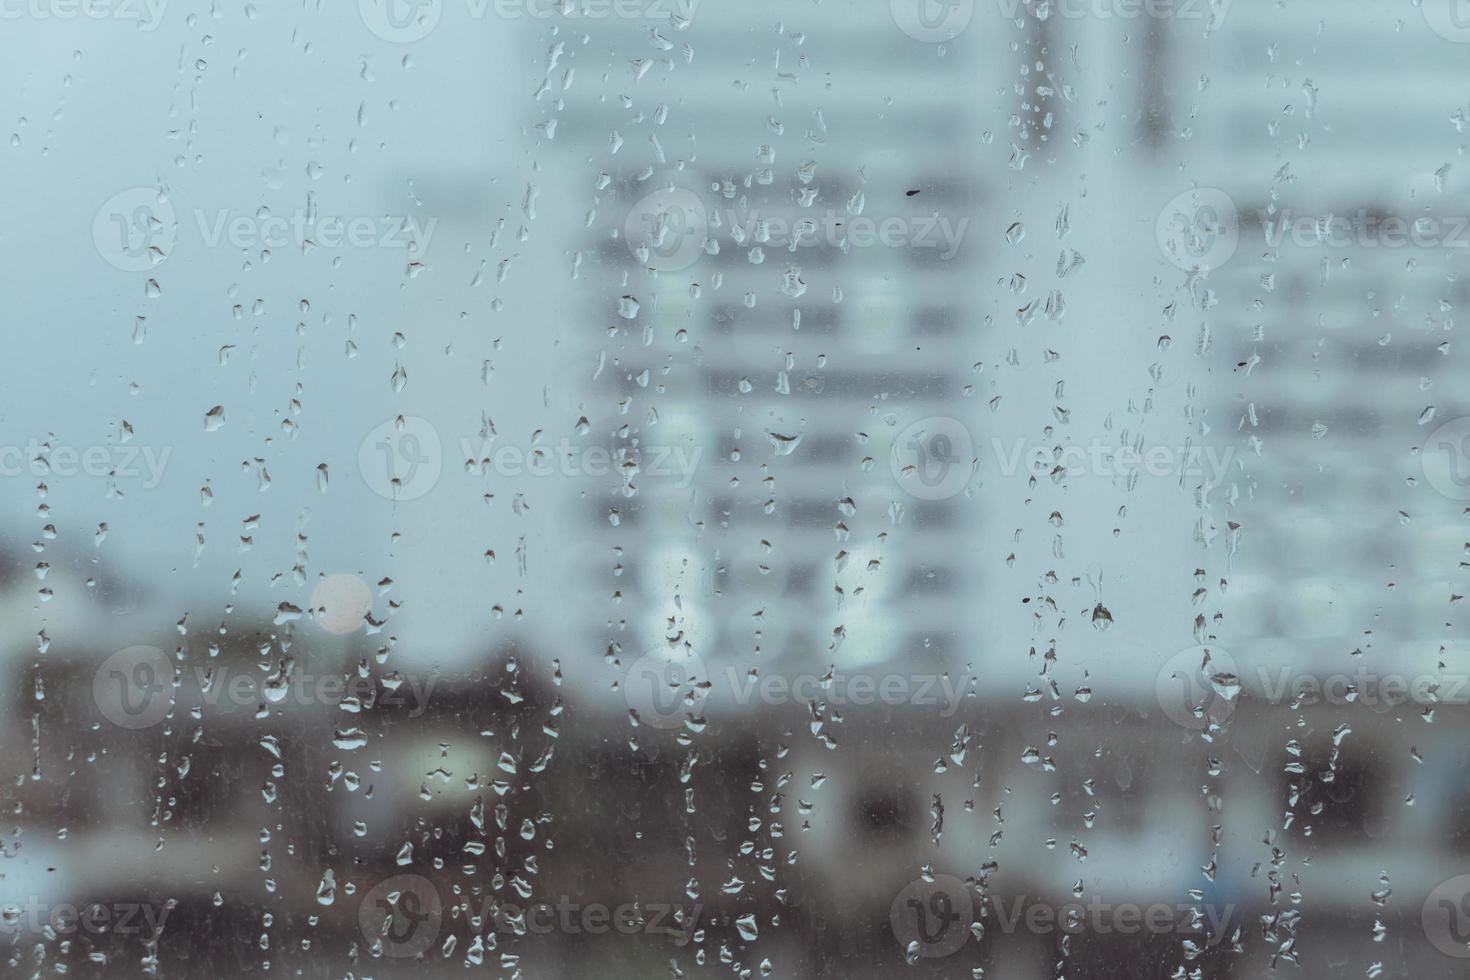 lloviendo en el cristal de las ventanas con el fondo del edificio de la ciudad borrosa foto